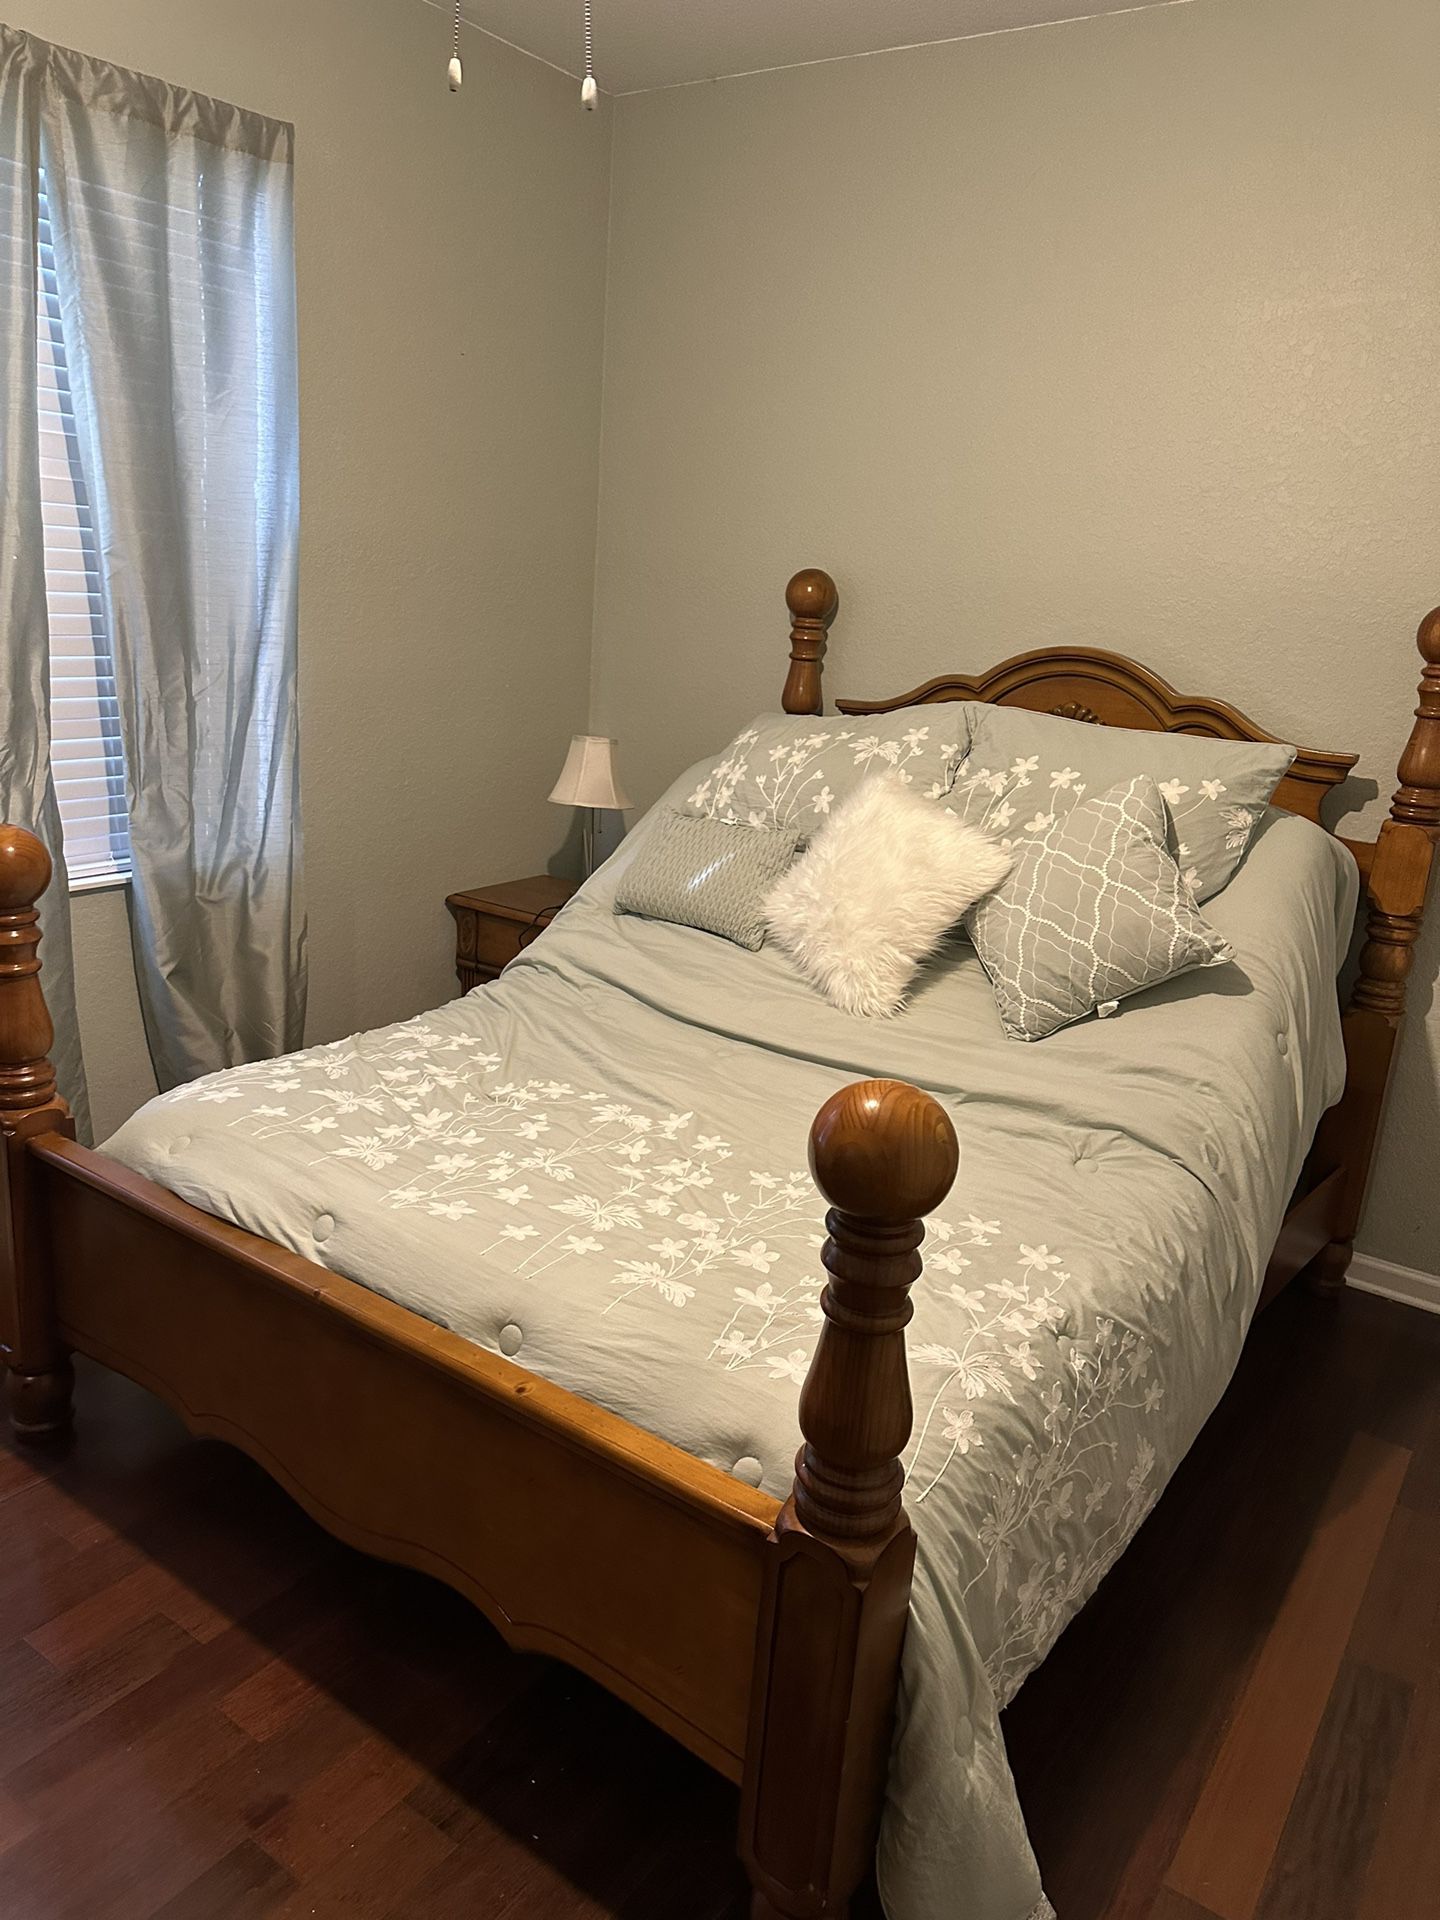 Bedroom Set: Dresser, Nightstand, Queen Bed, Adjustable Base